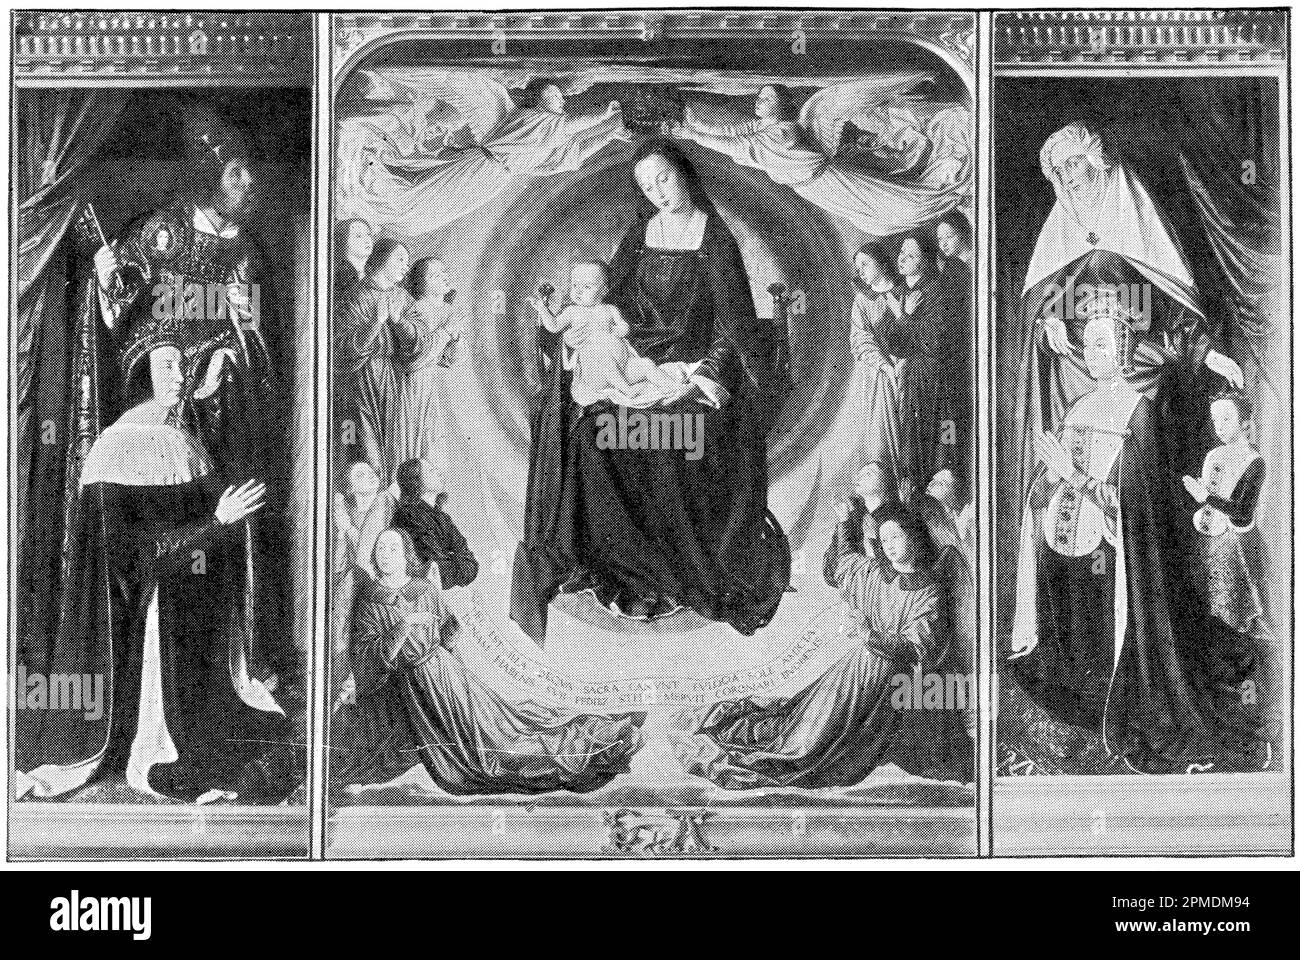 The Moulins Triptych in Moulins Cathedral von einem frühen niederländischen Maler Jean Hey (Master of Moulins). Veröffentlichung des Buches "Meyers Konversations-Lexikon", Band 2, Leipzig, 1910 Stockfoto